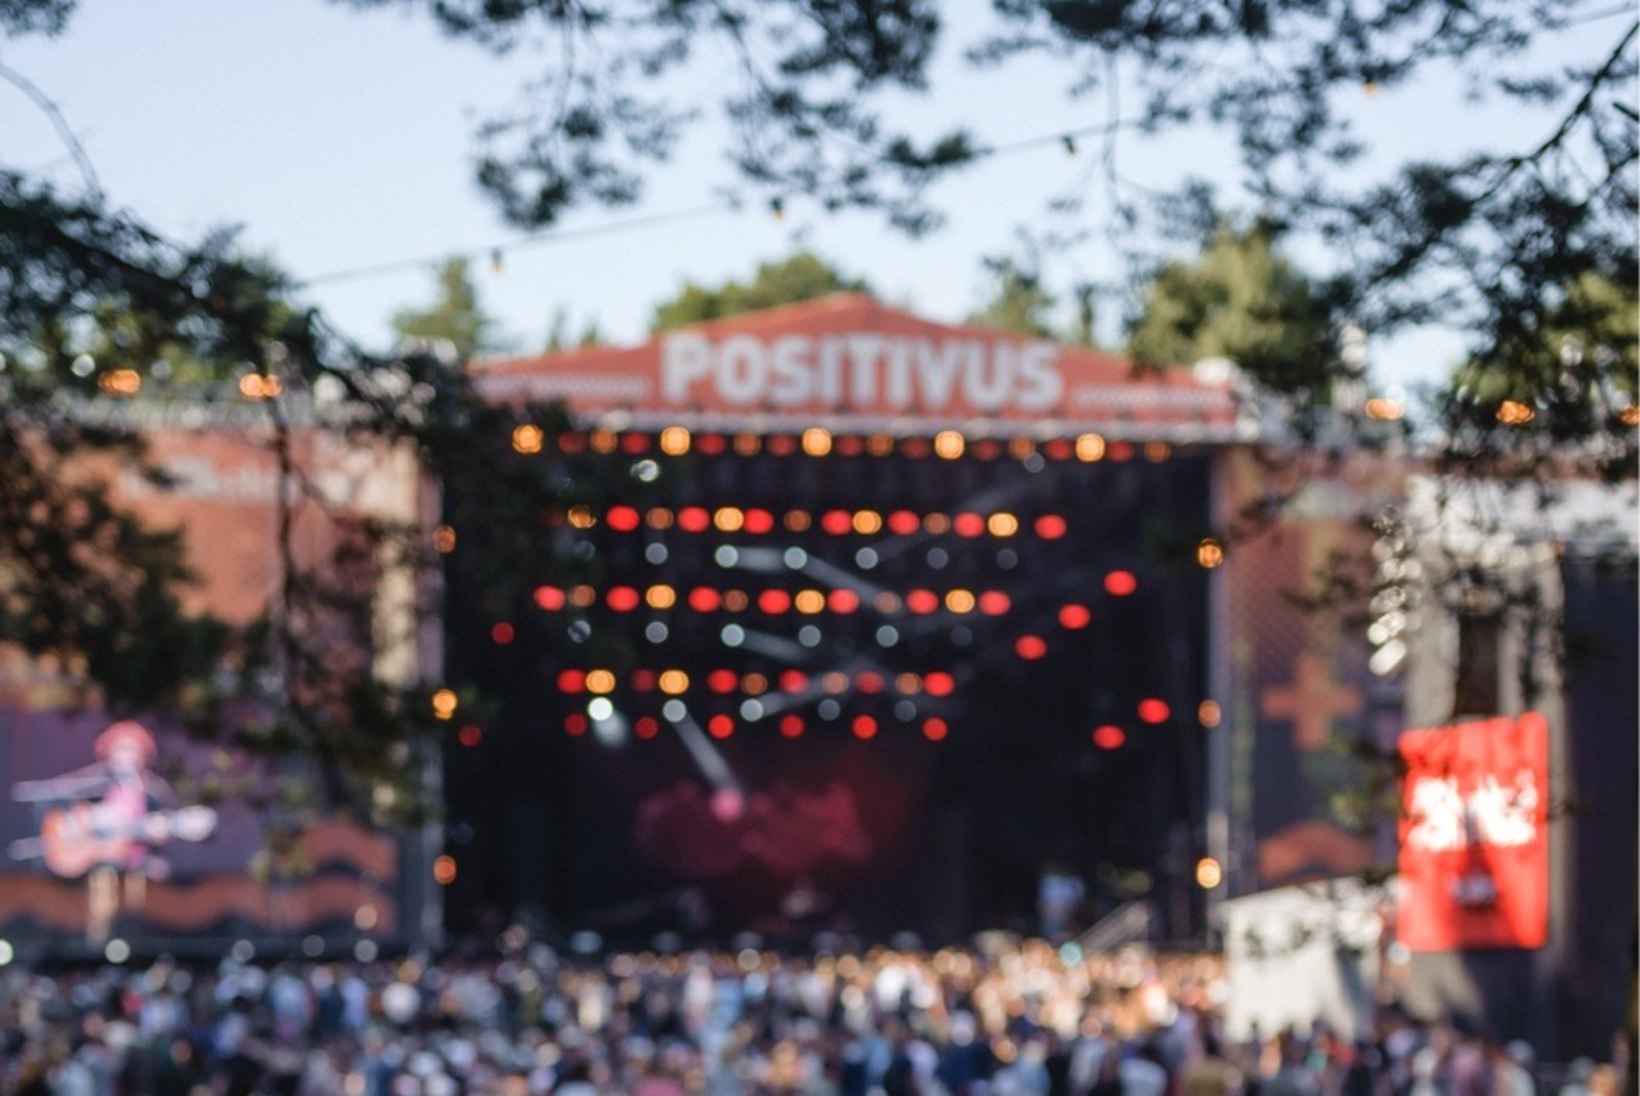 GALERII | Positivuse kolmas festivalipäev möödus rahulikult